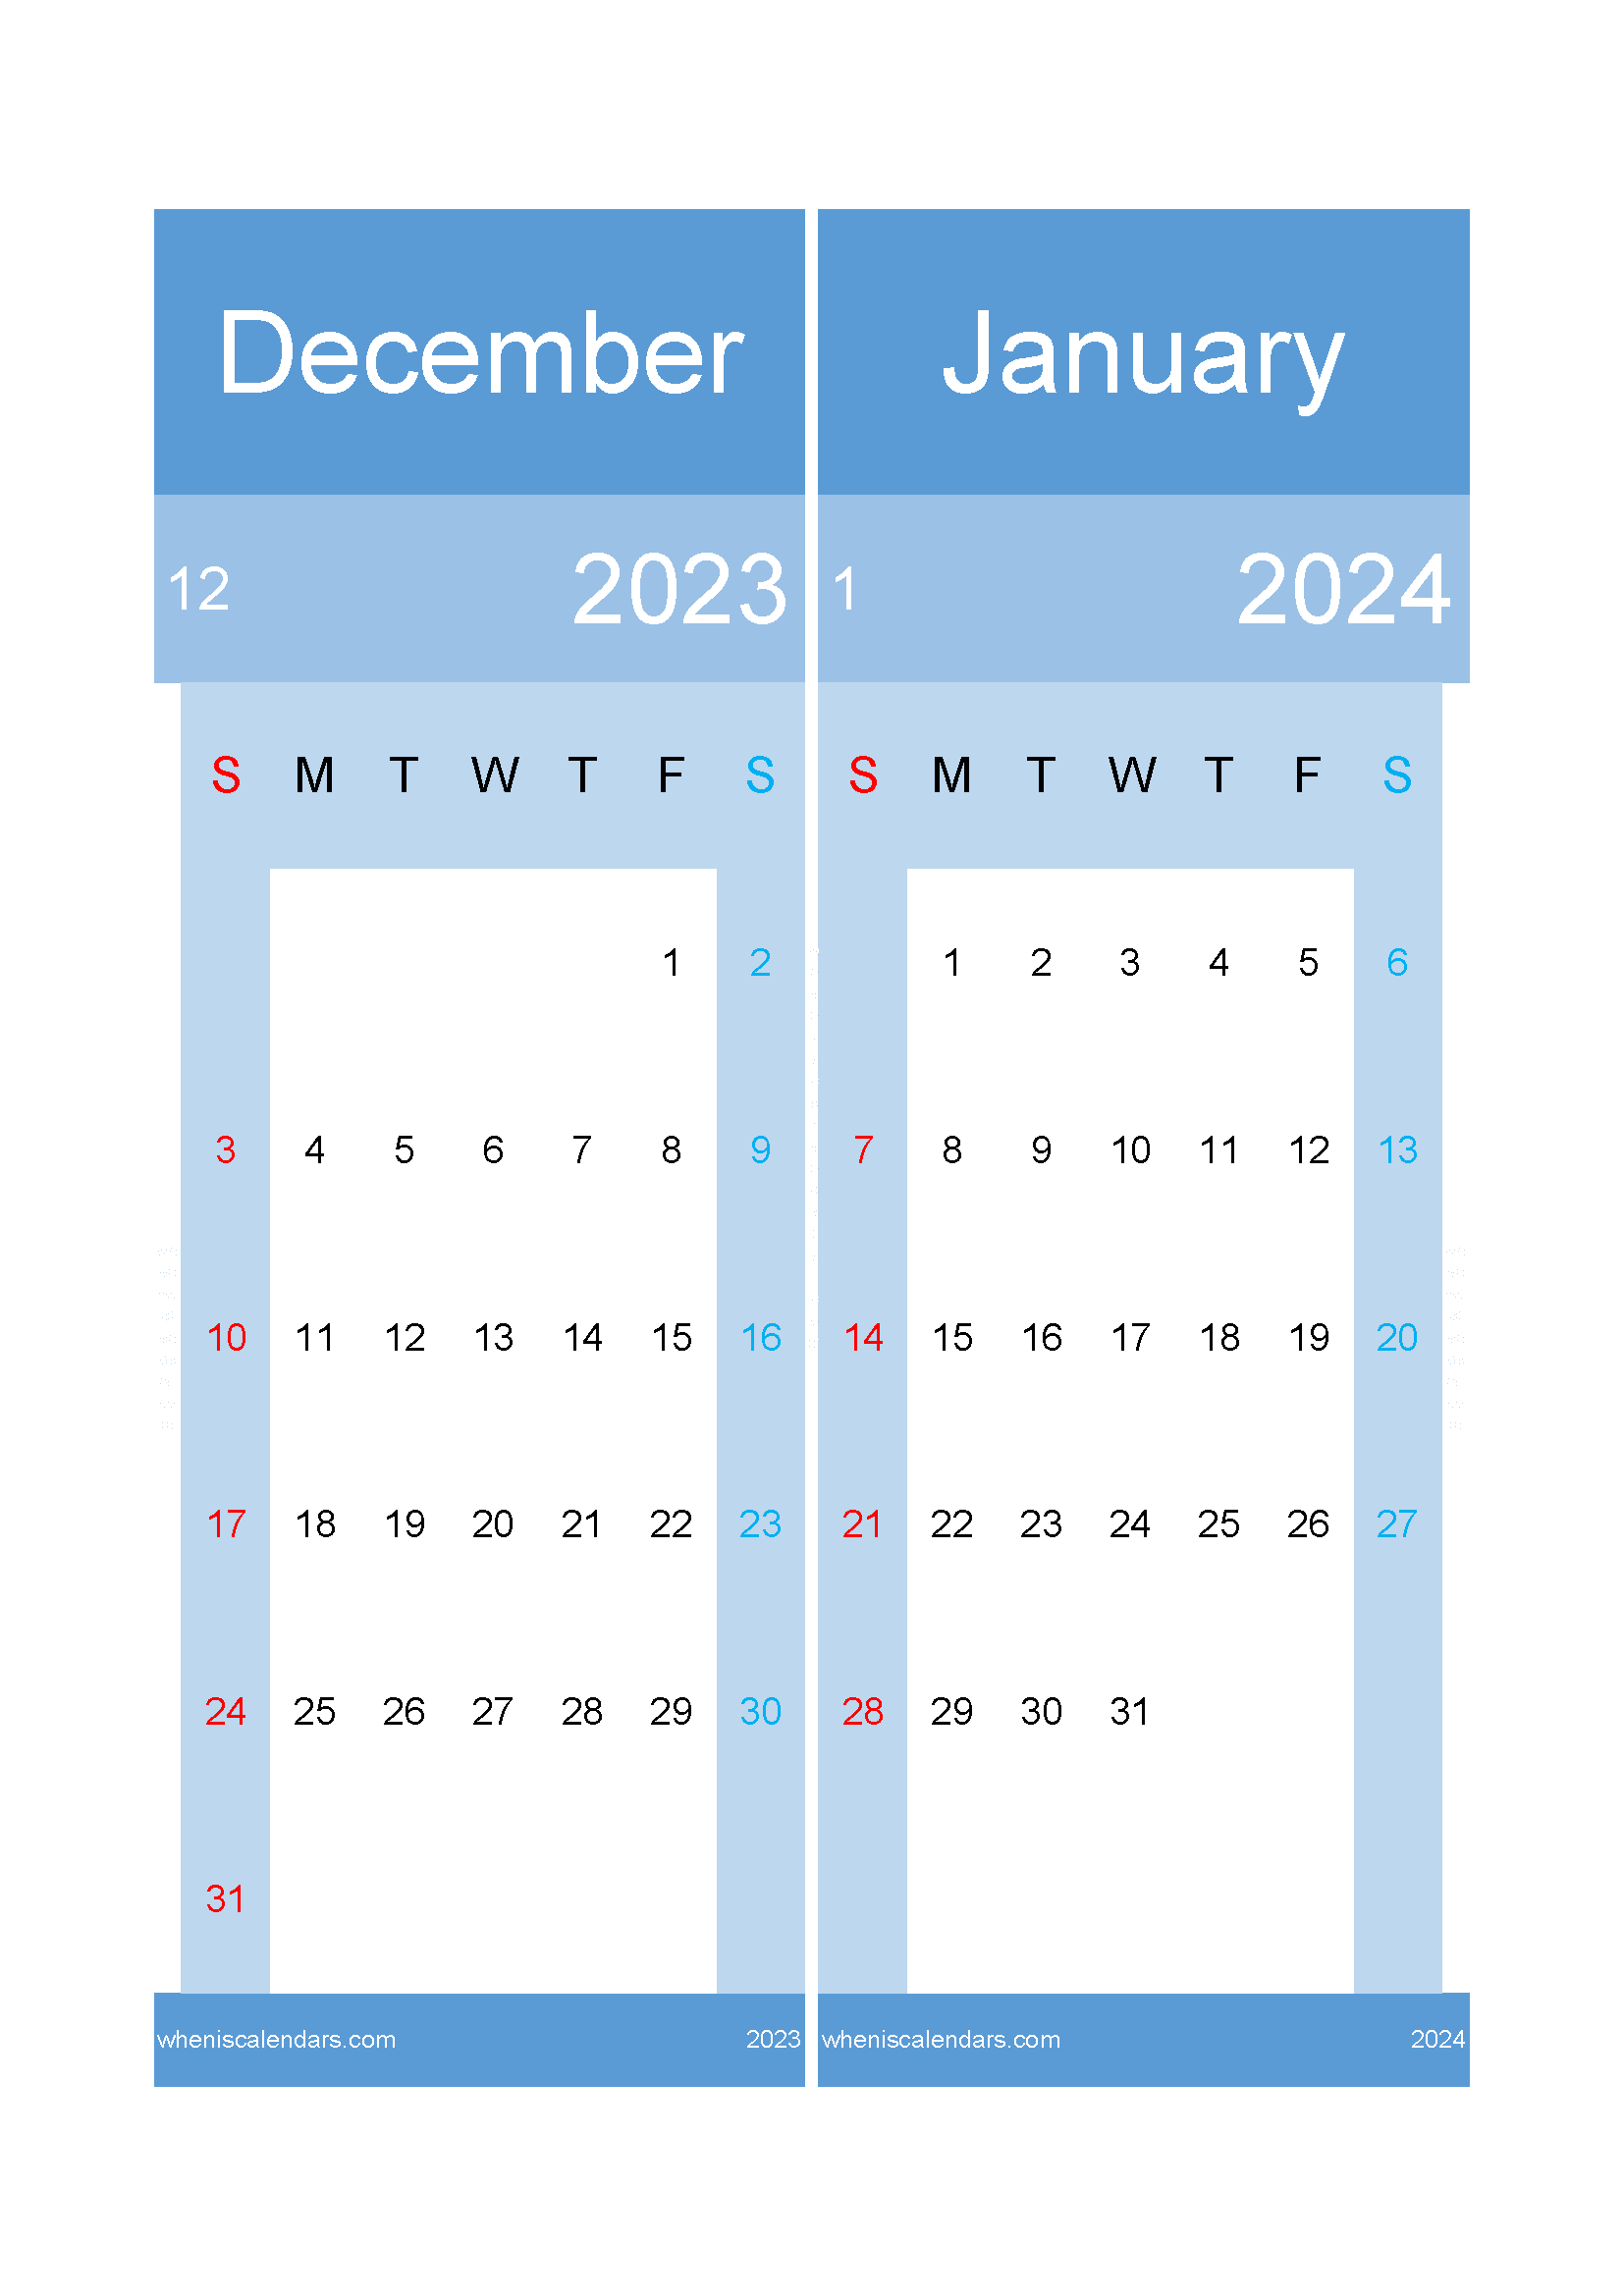 Download Calendar Dec 2023 And January 2024 A4 Dj23021 | Wincalendar Free Printable Calendar 2024